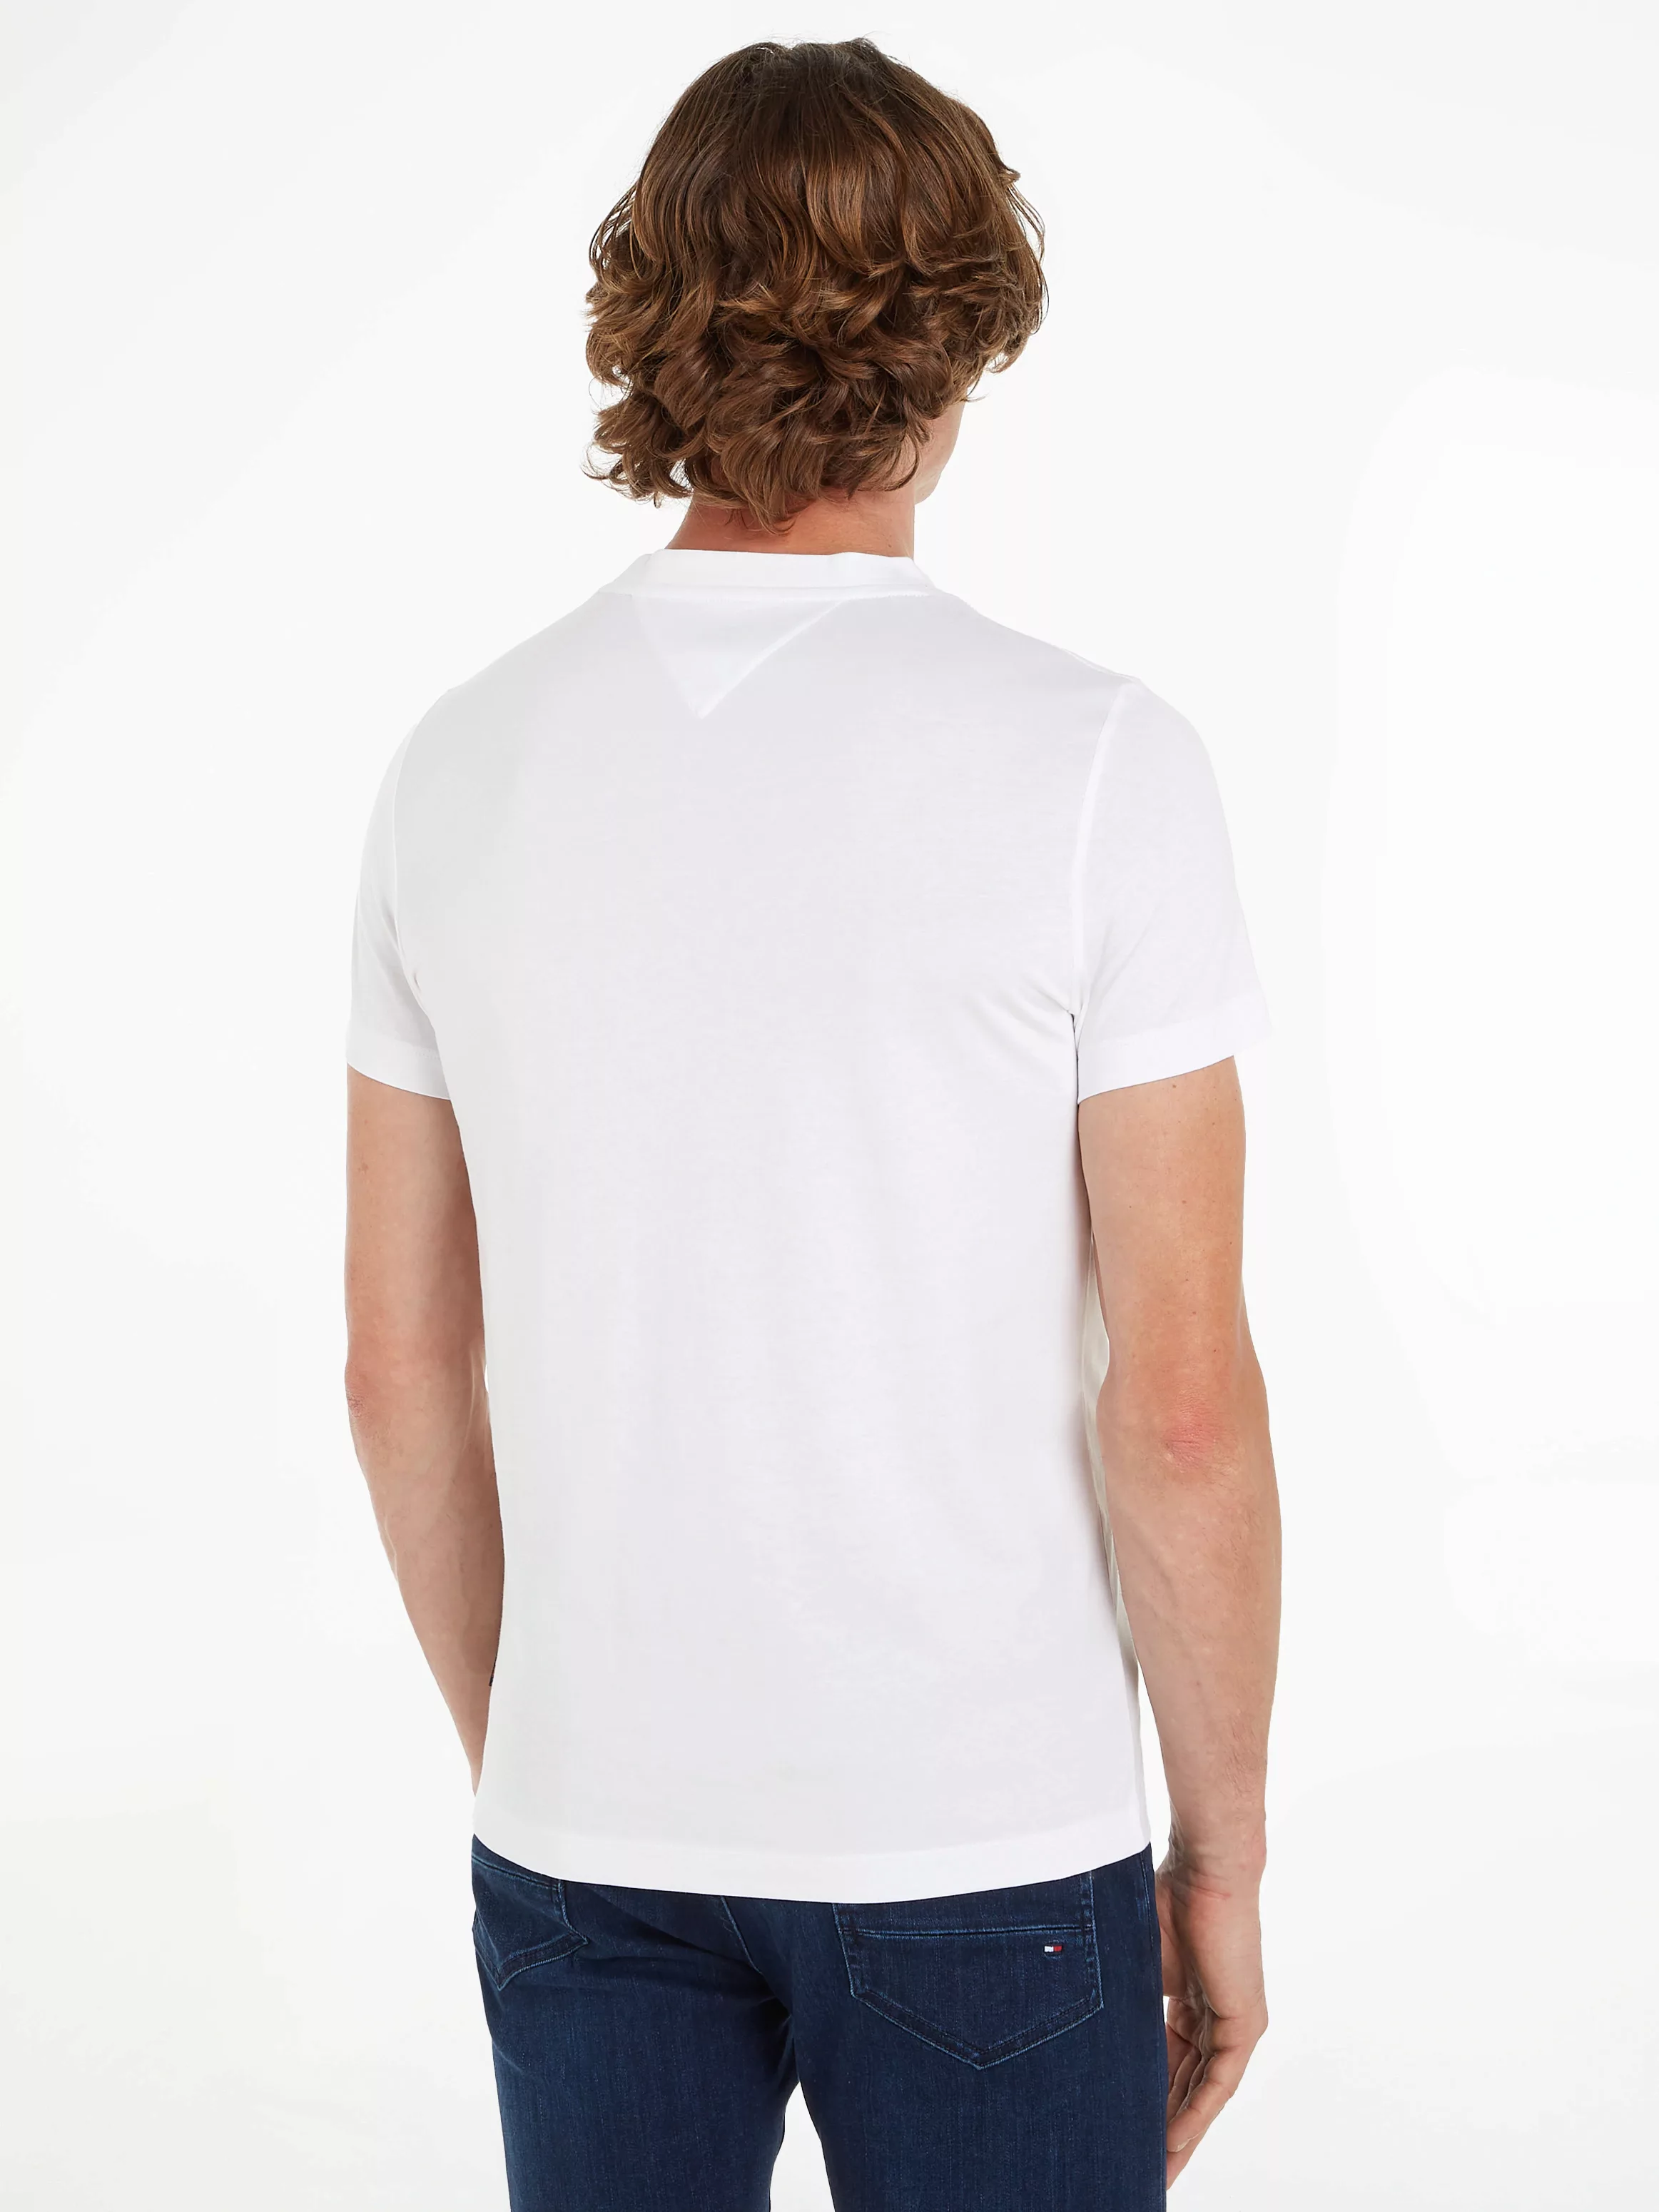 Tommy Hilfiger T-Shirt HILFIGER ROUNDLE TEE günstig online kaufen